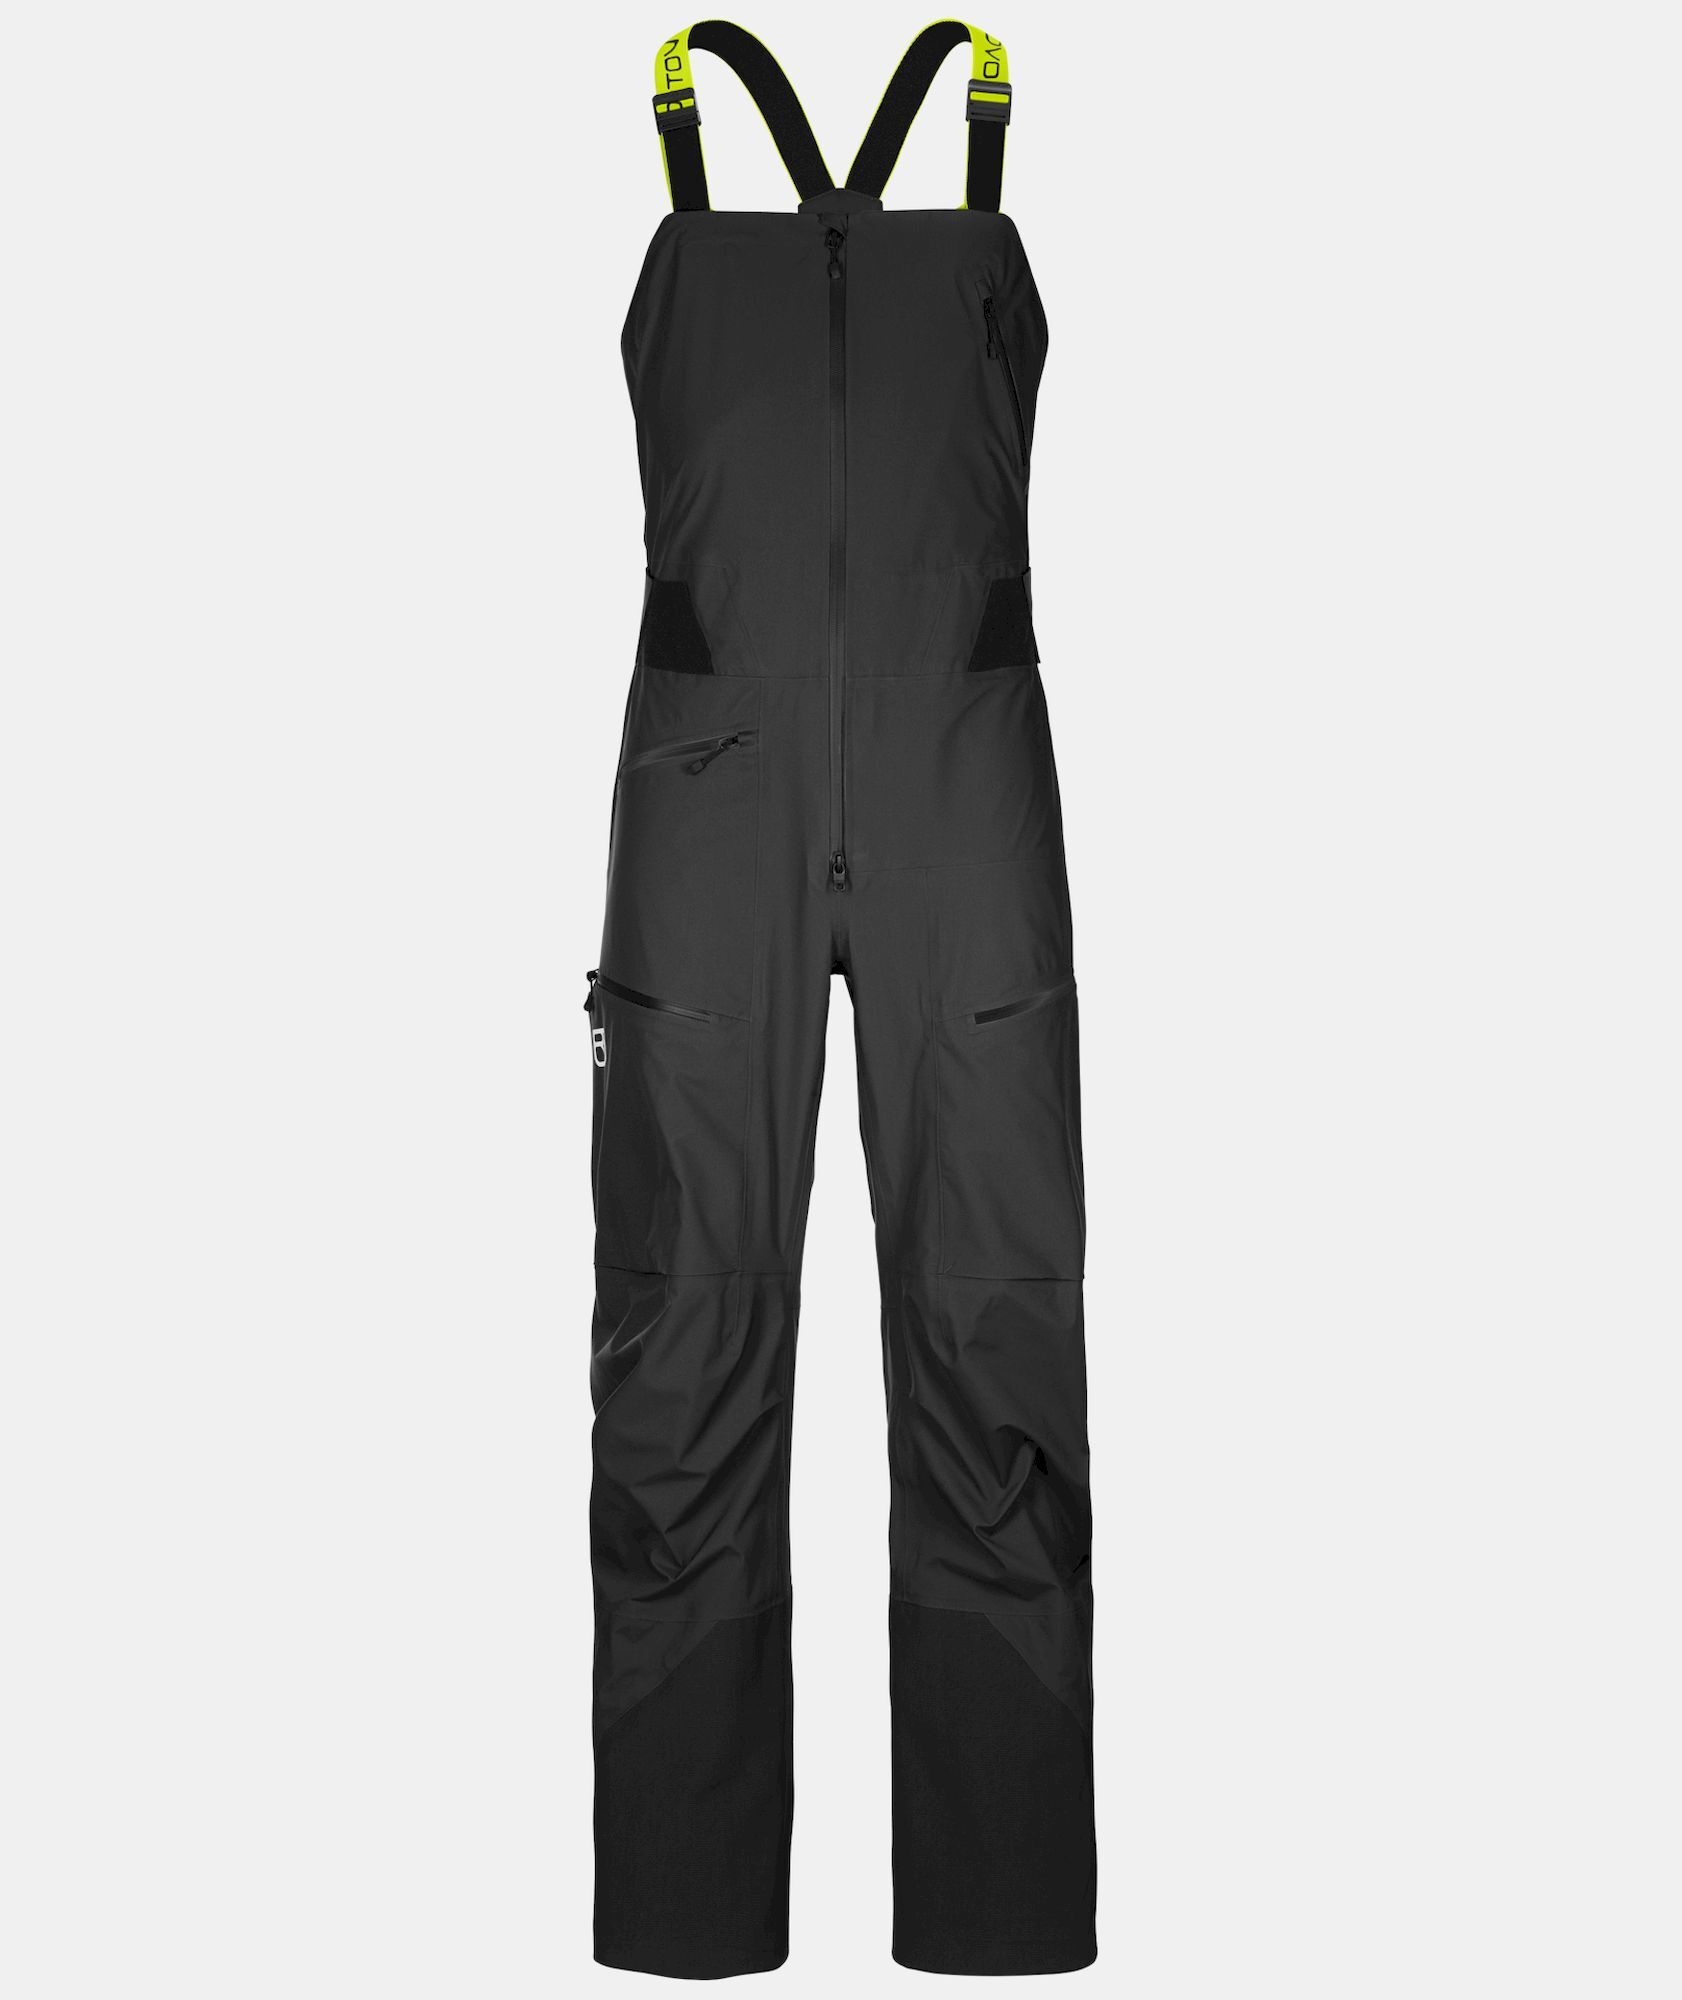 Ortovox 3L Deep Shell Bib Pants - Pantalón de esquí - Hombre